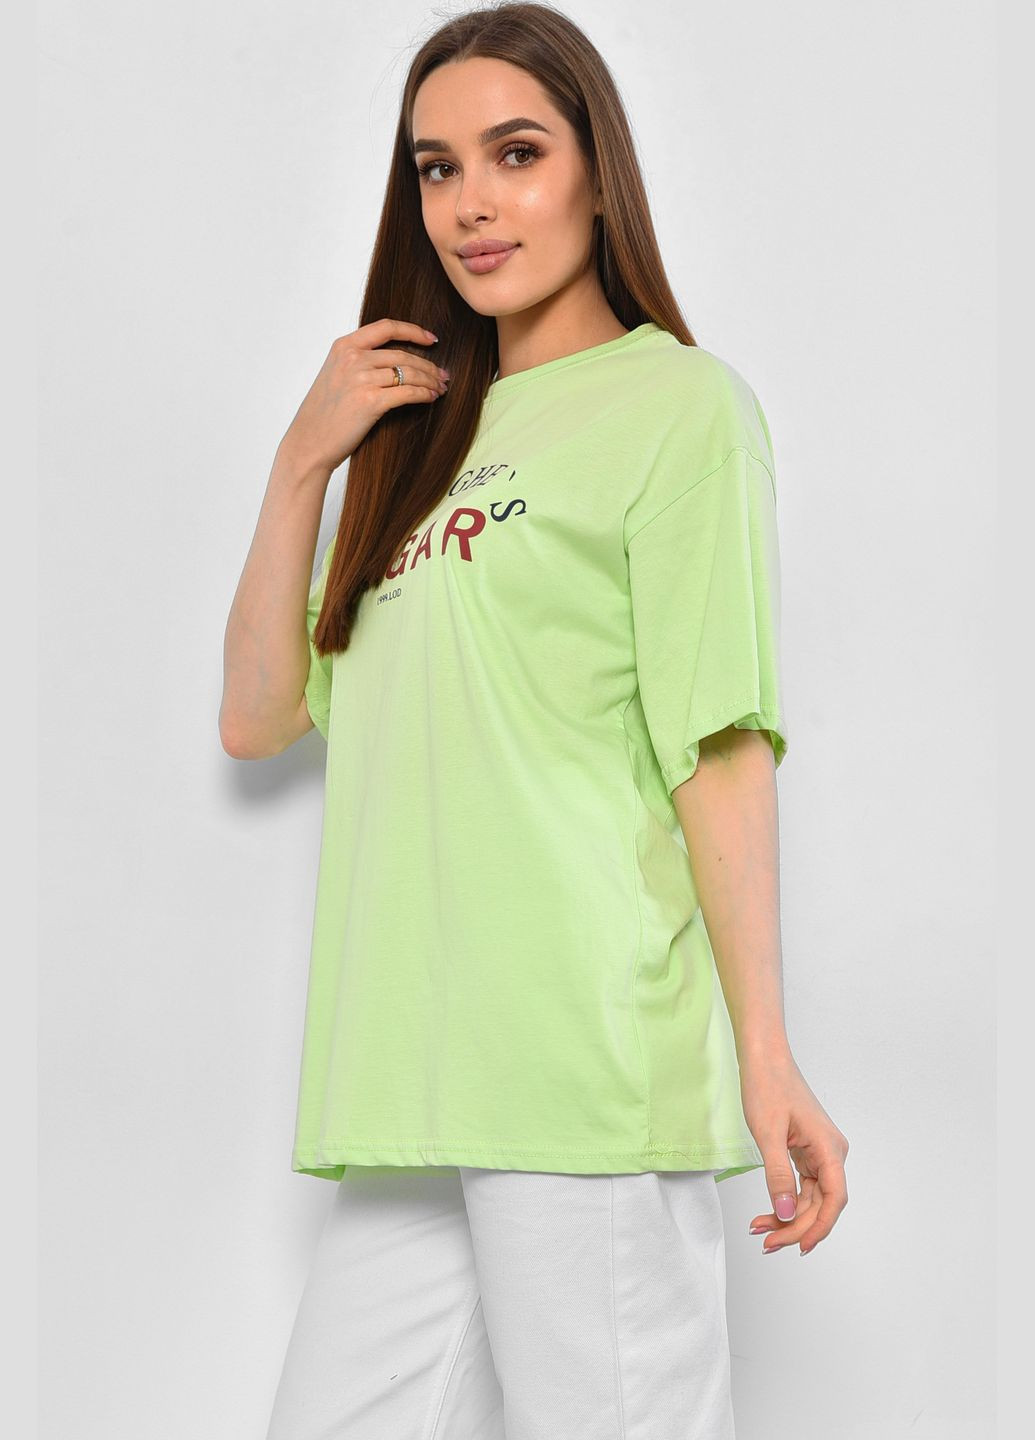 Салатовая летняя футболка женская салатового цвета Let's Shop